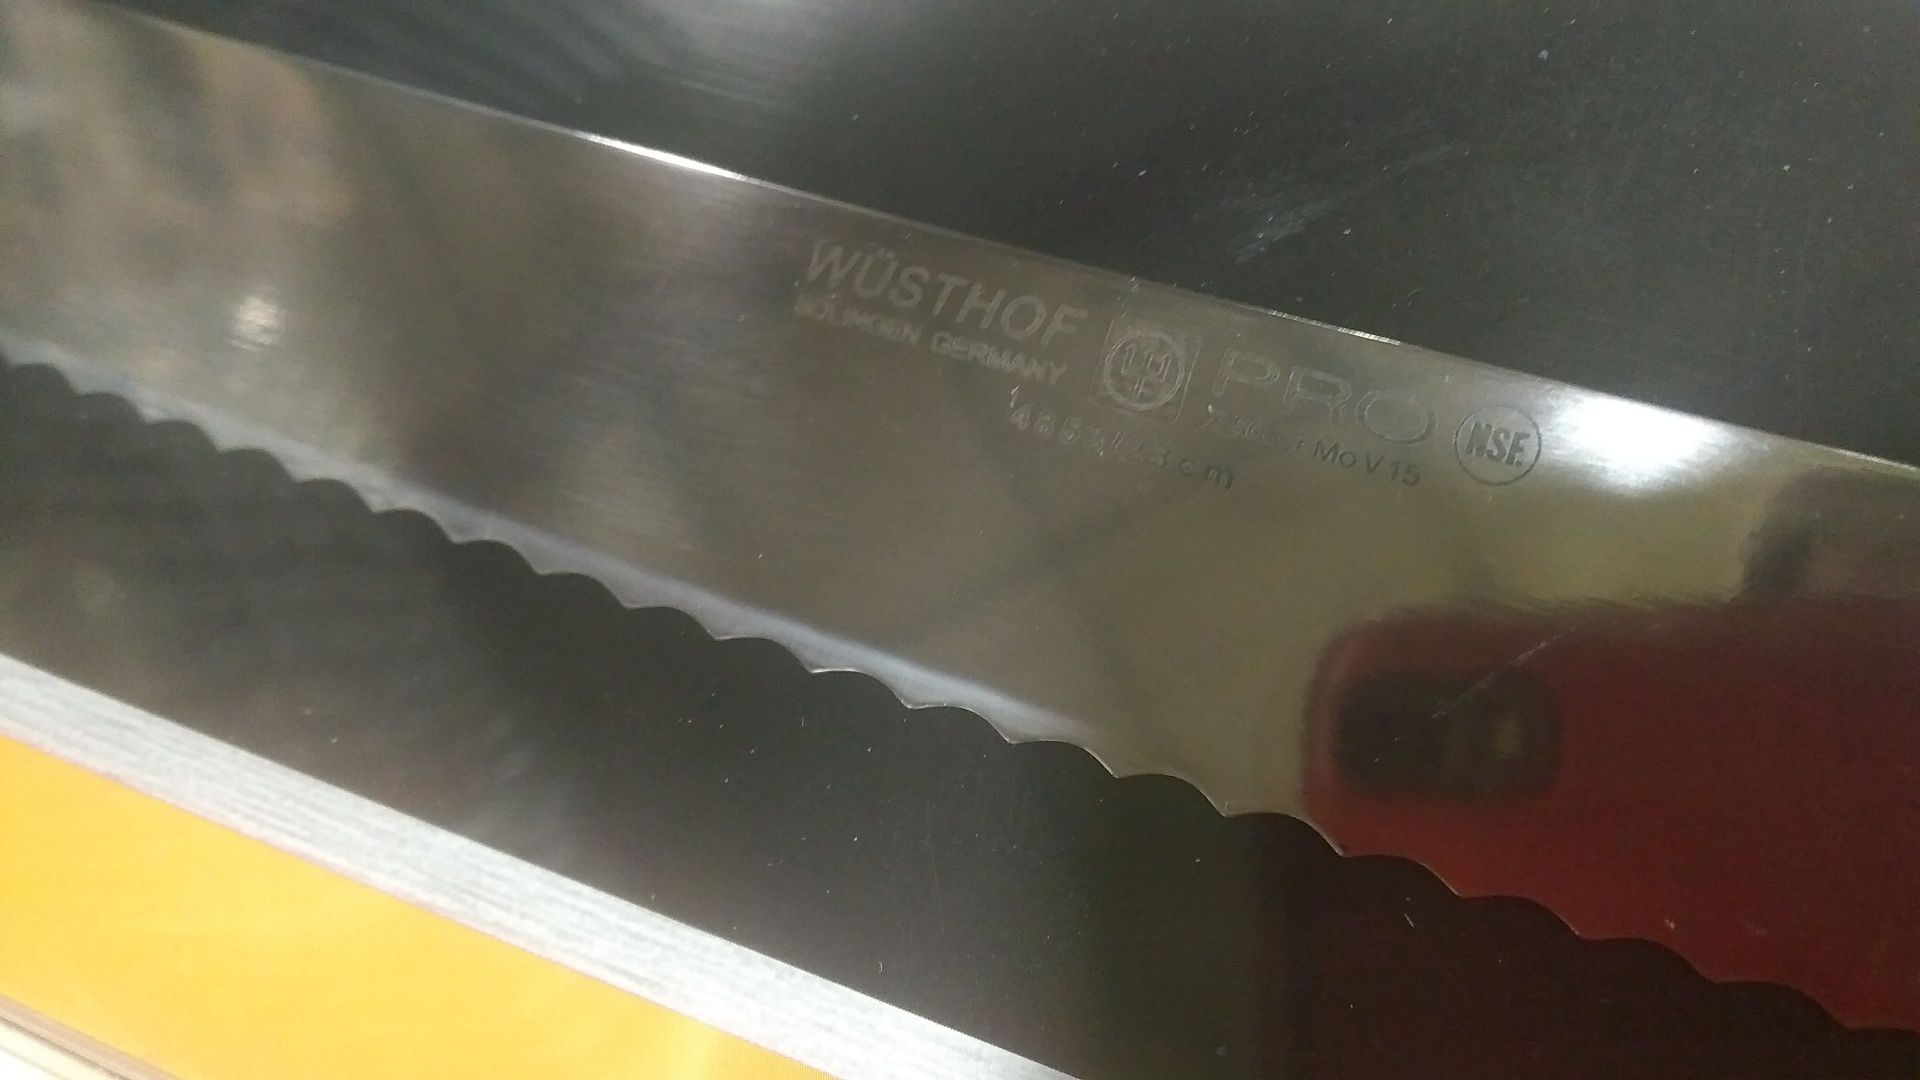 Wusthof Pro 9" Bread Knife (4853-7) - Image 2 of 2